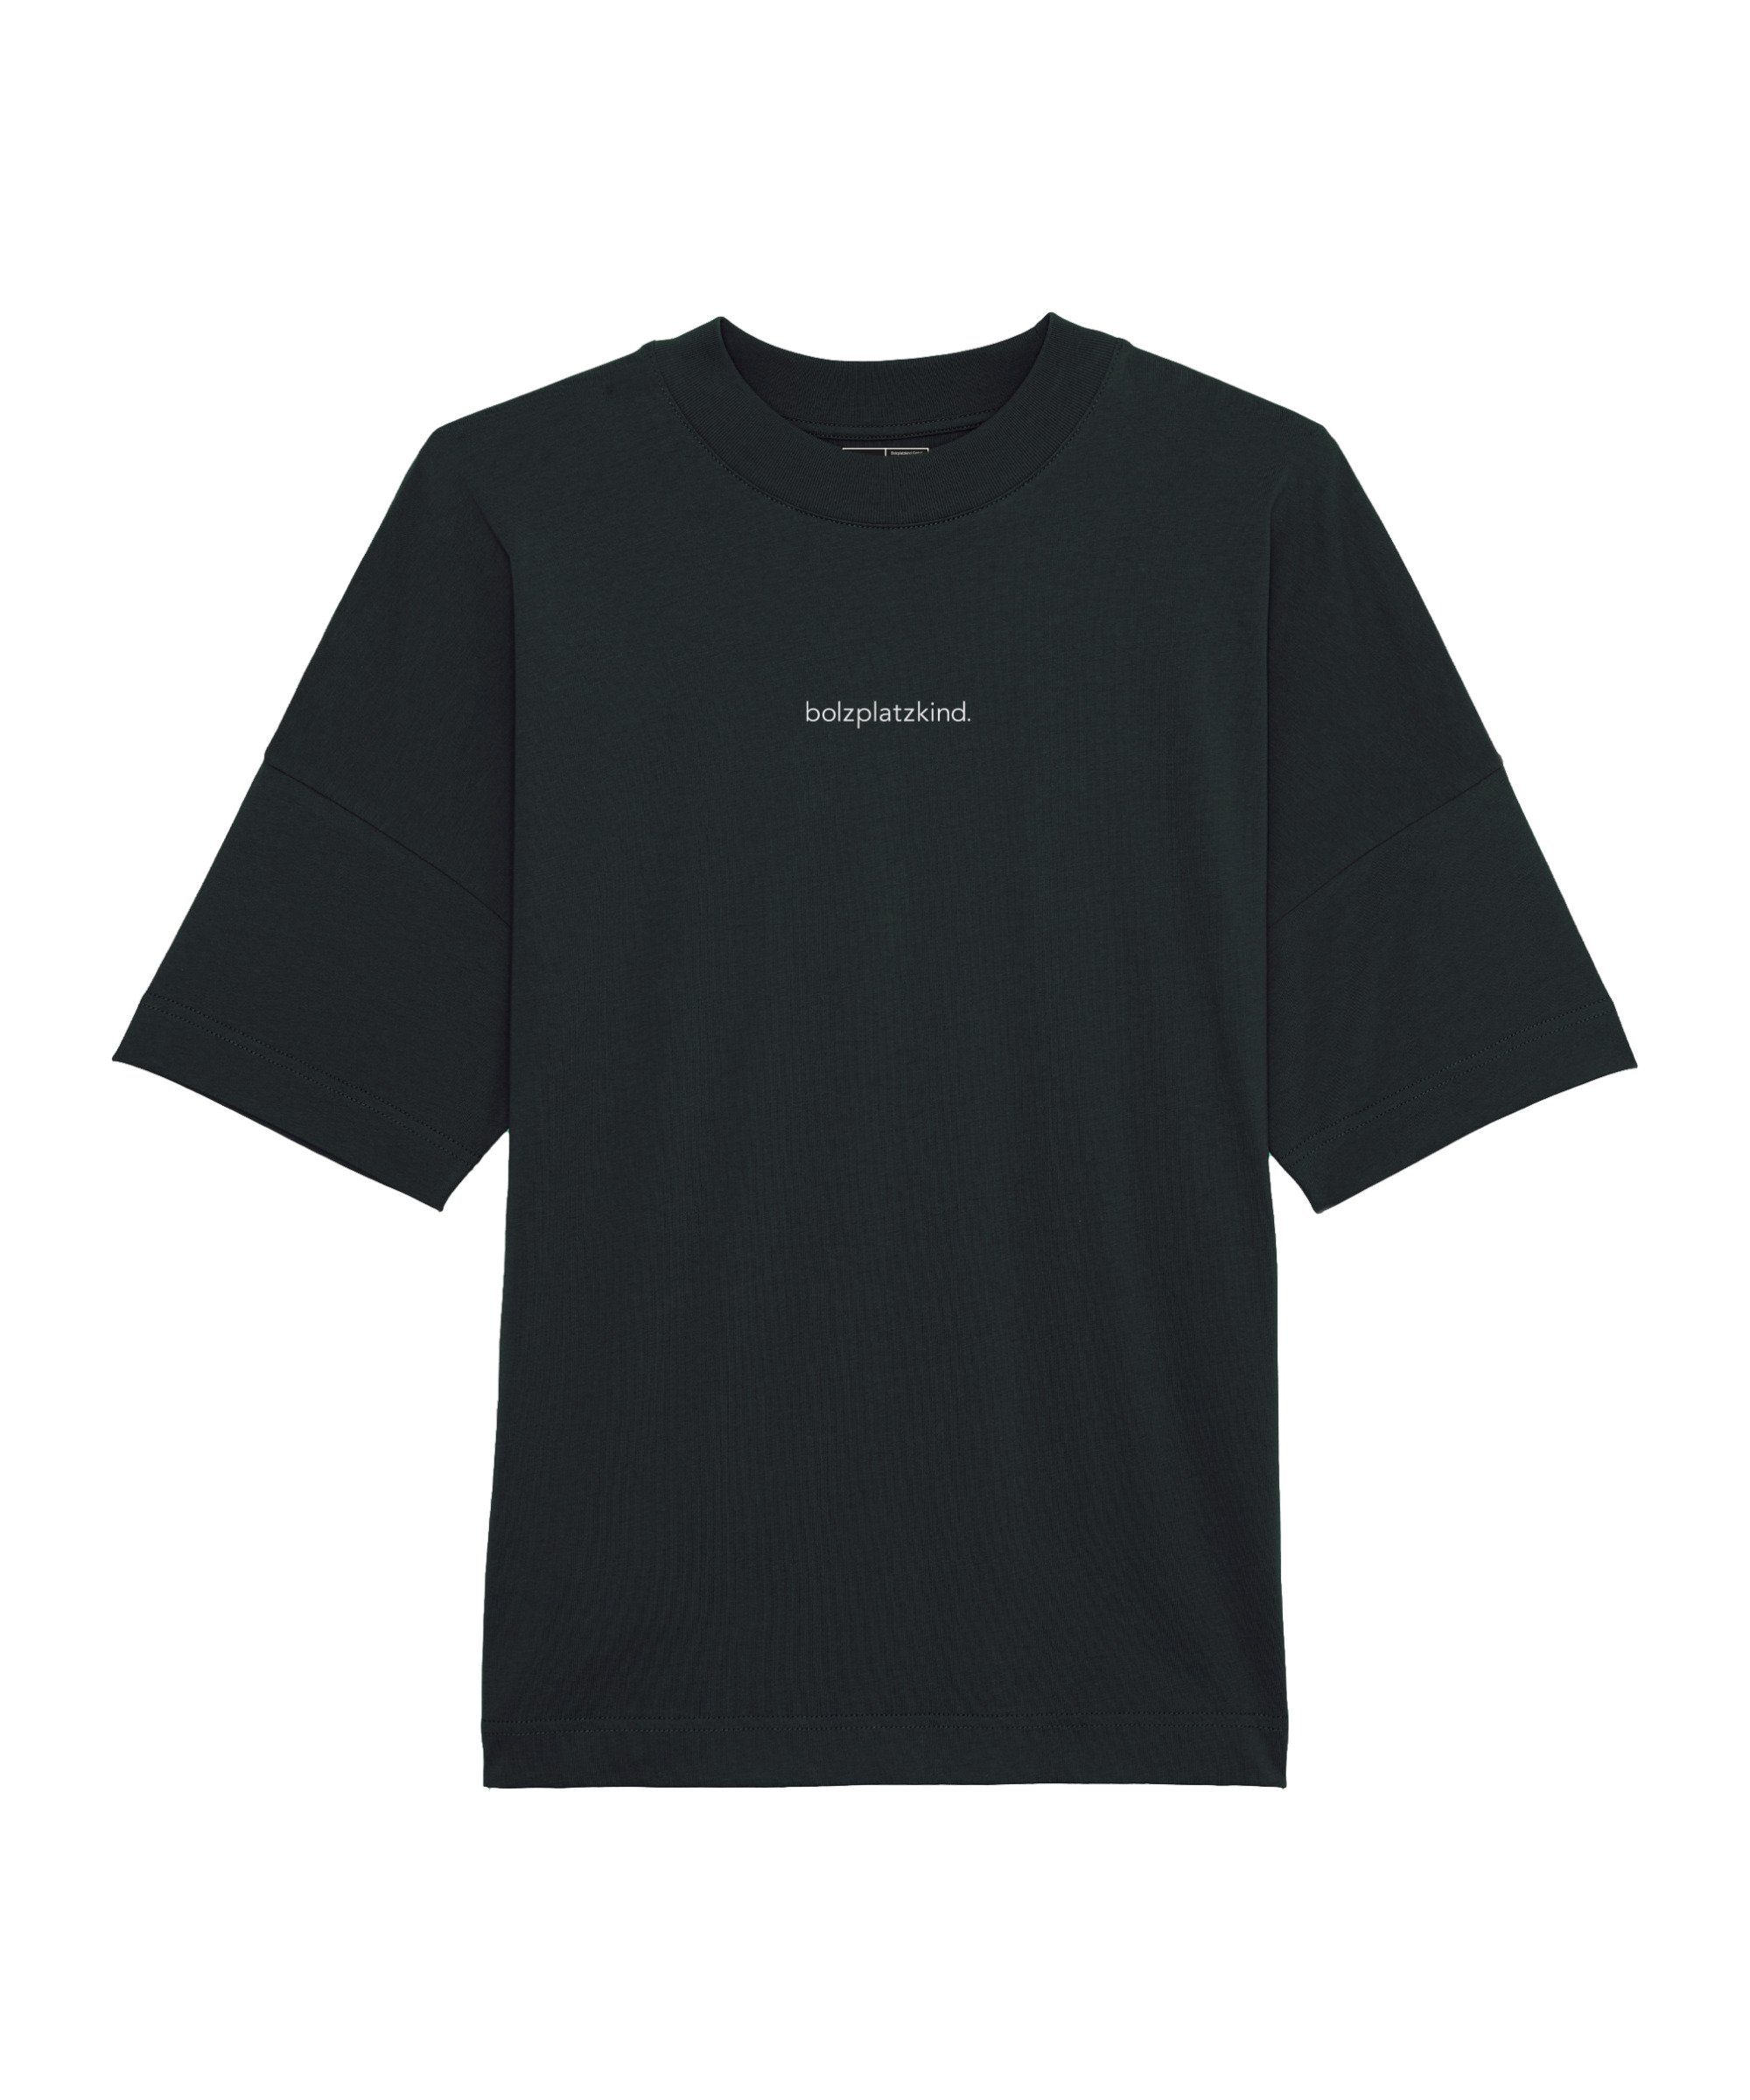 T-Shirt "Friendly-Leader" T-Shirt Bolzplatzkind Oversize schwarzweiss default